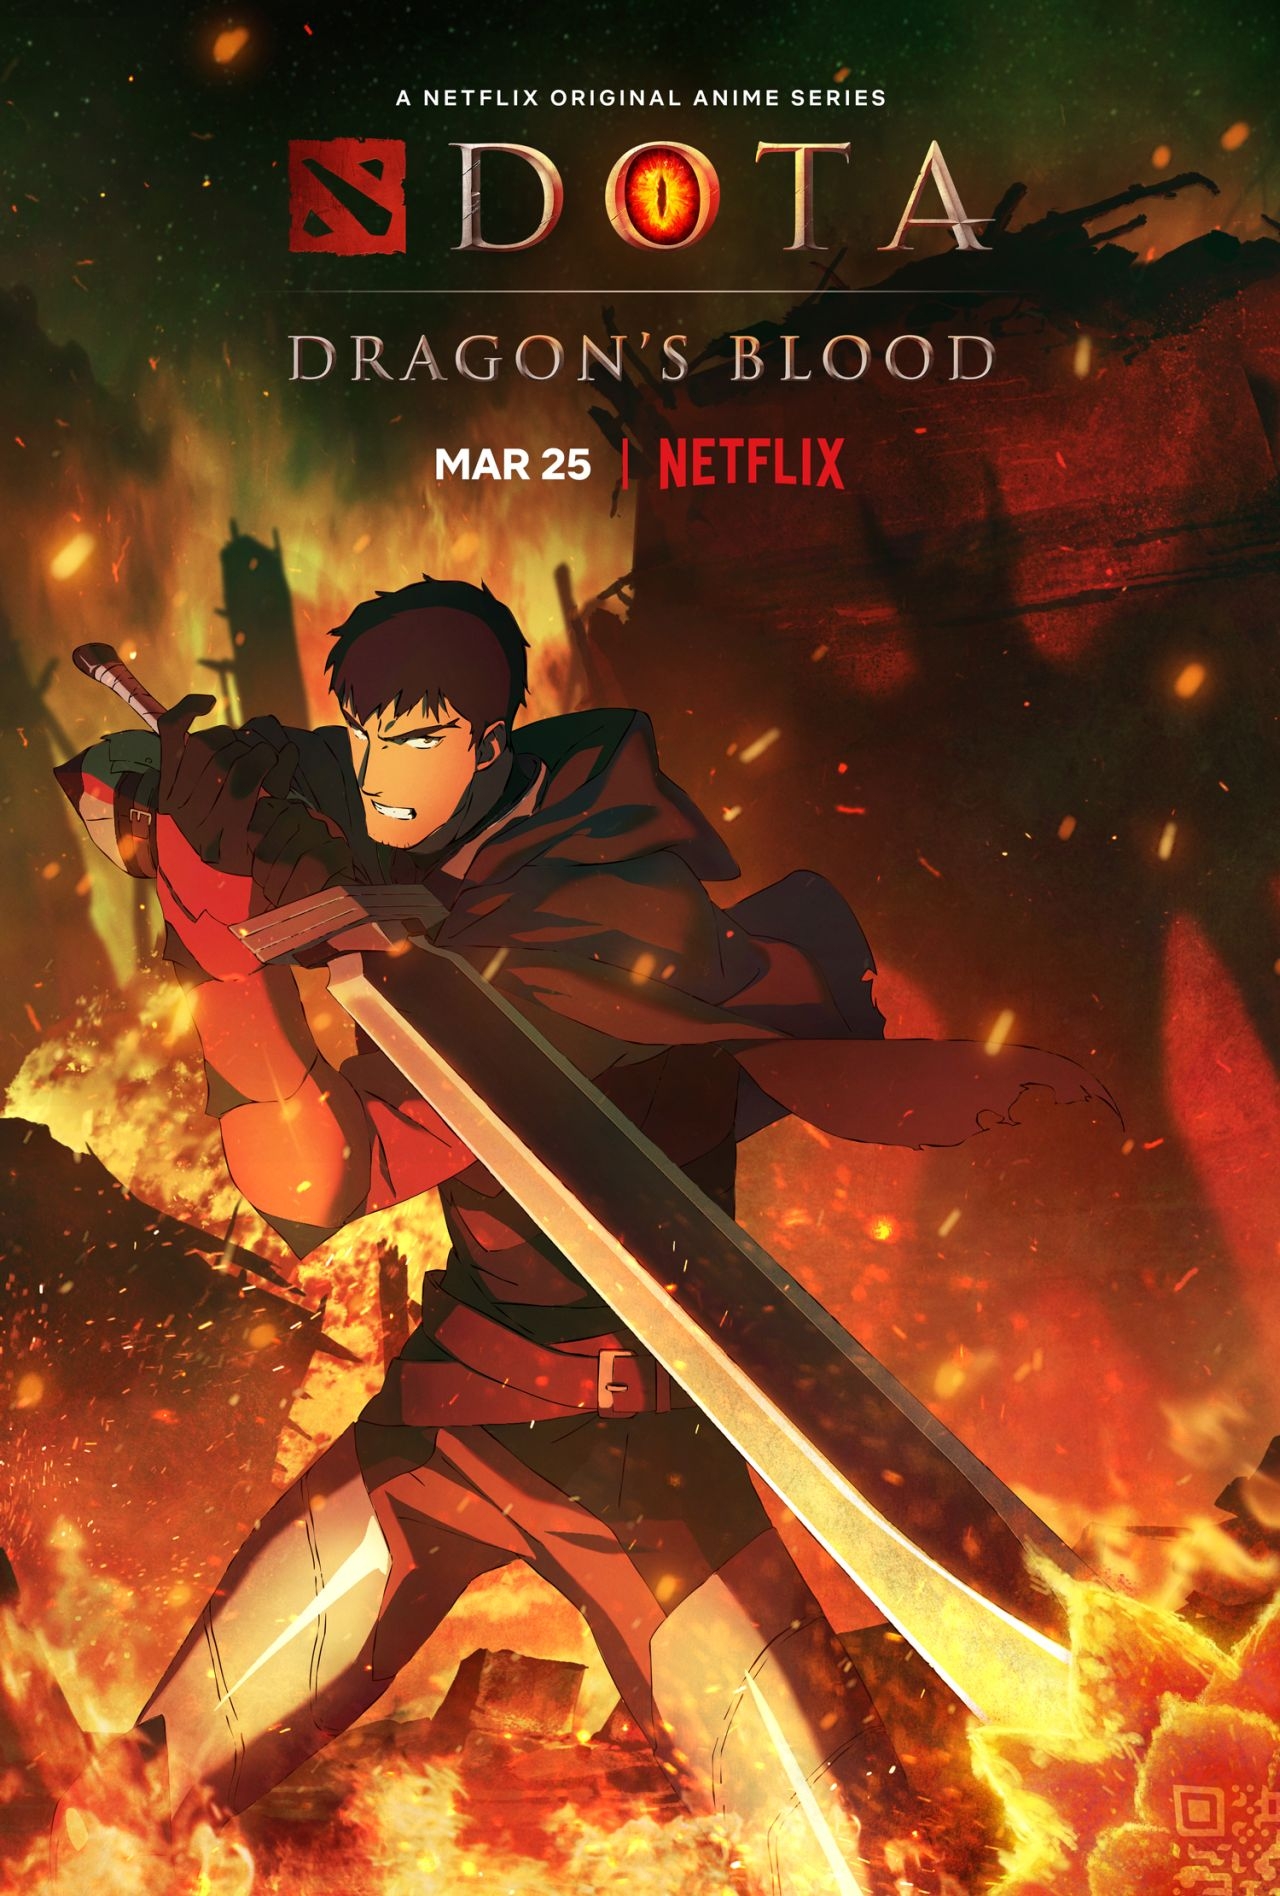 DOTA: Dragon's Blood Netflix series based on DOTA 2 MOBA game